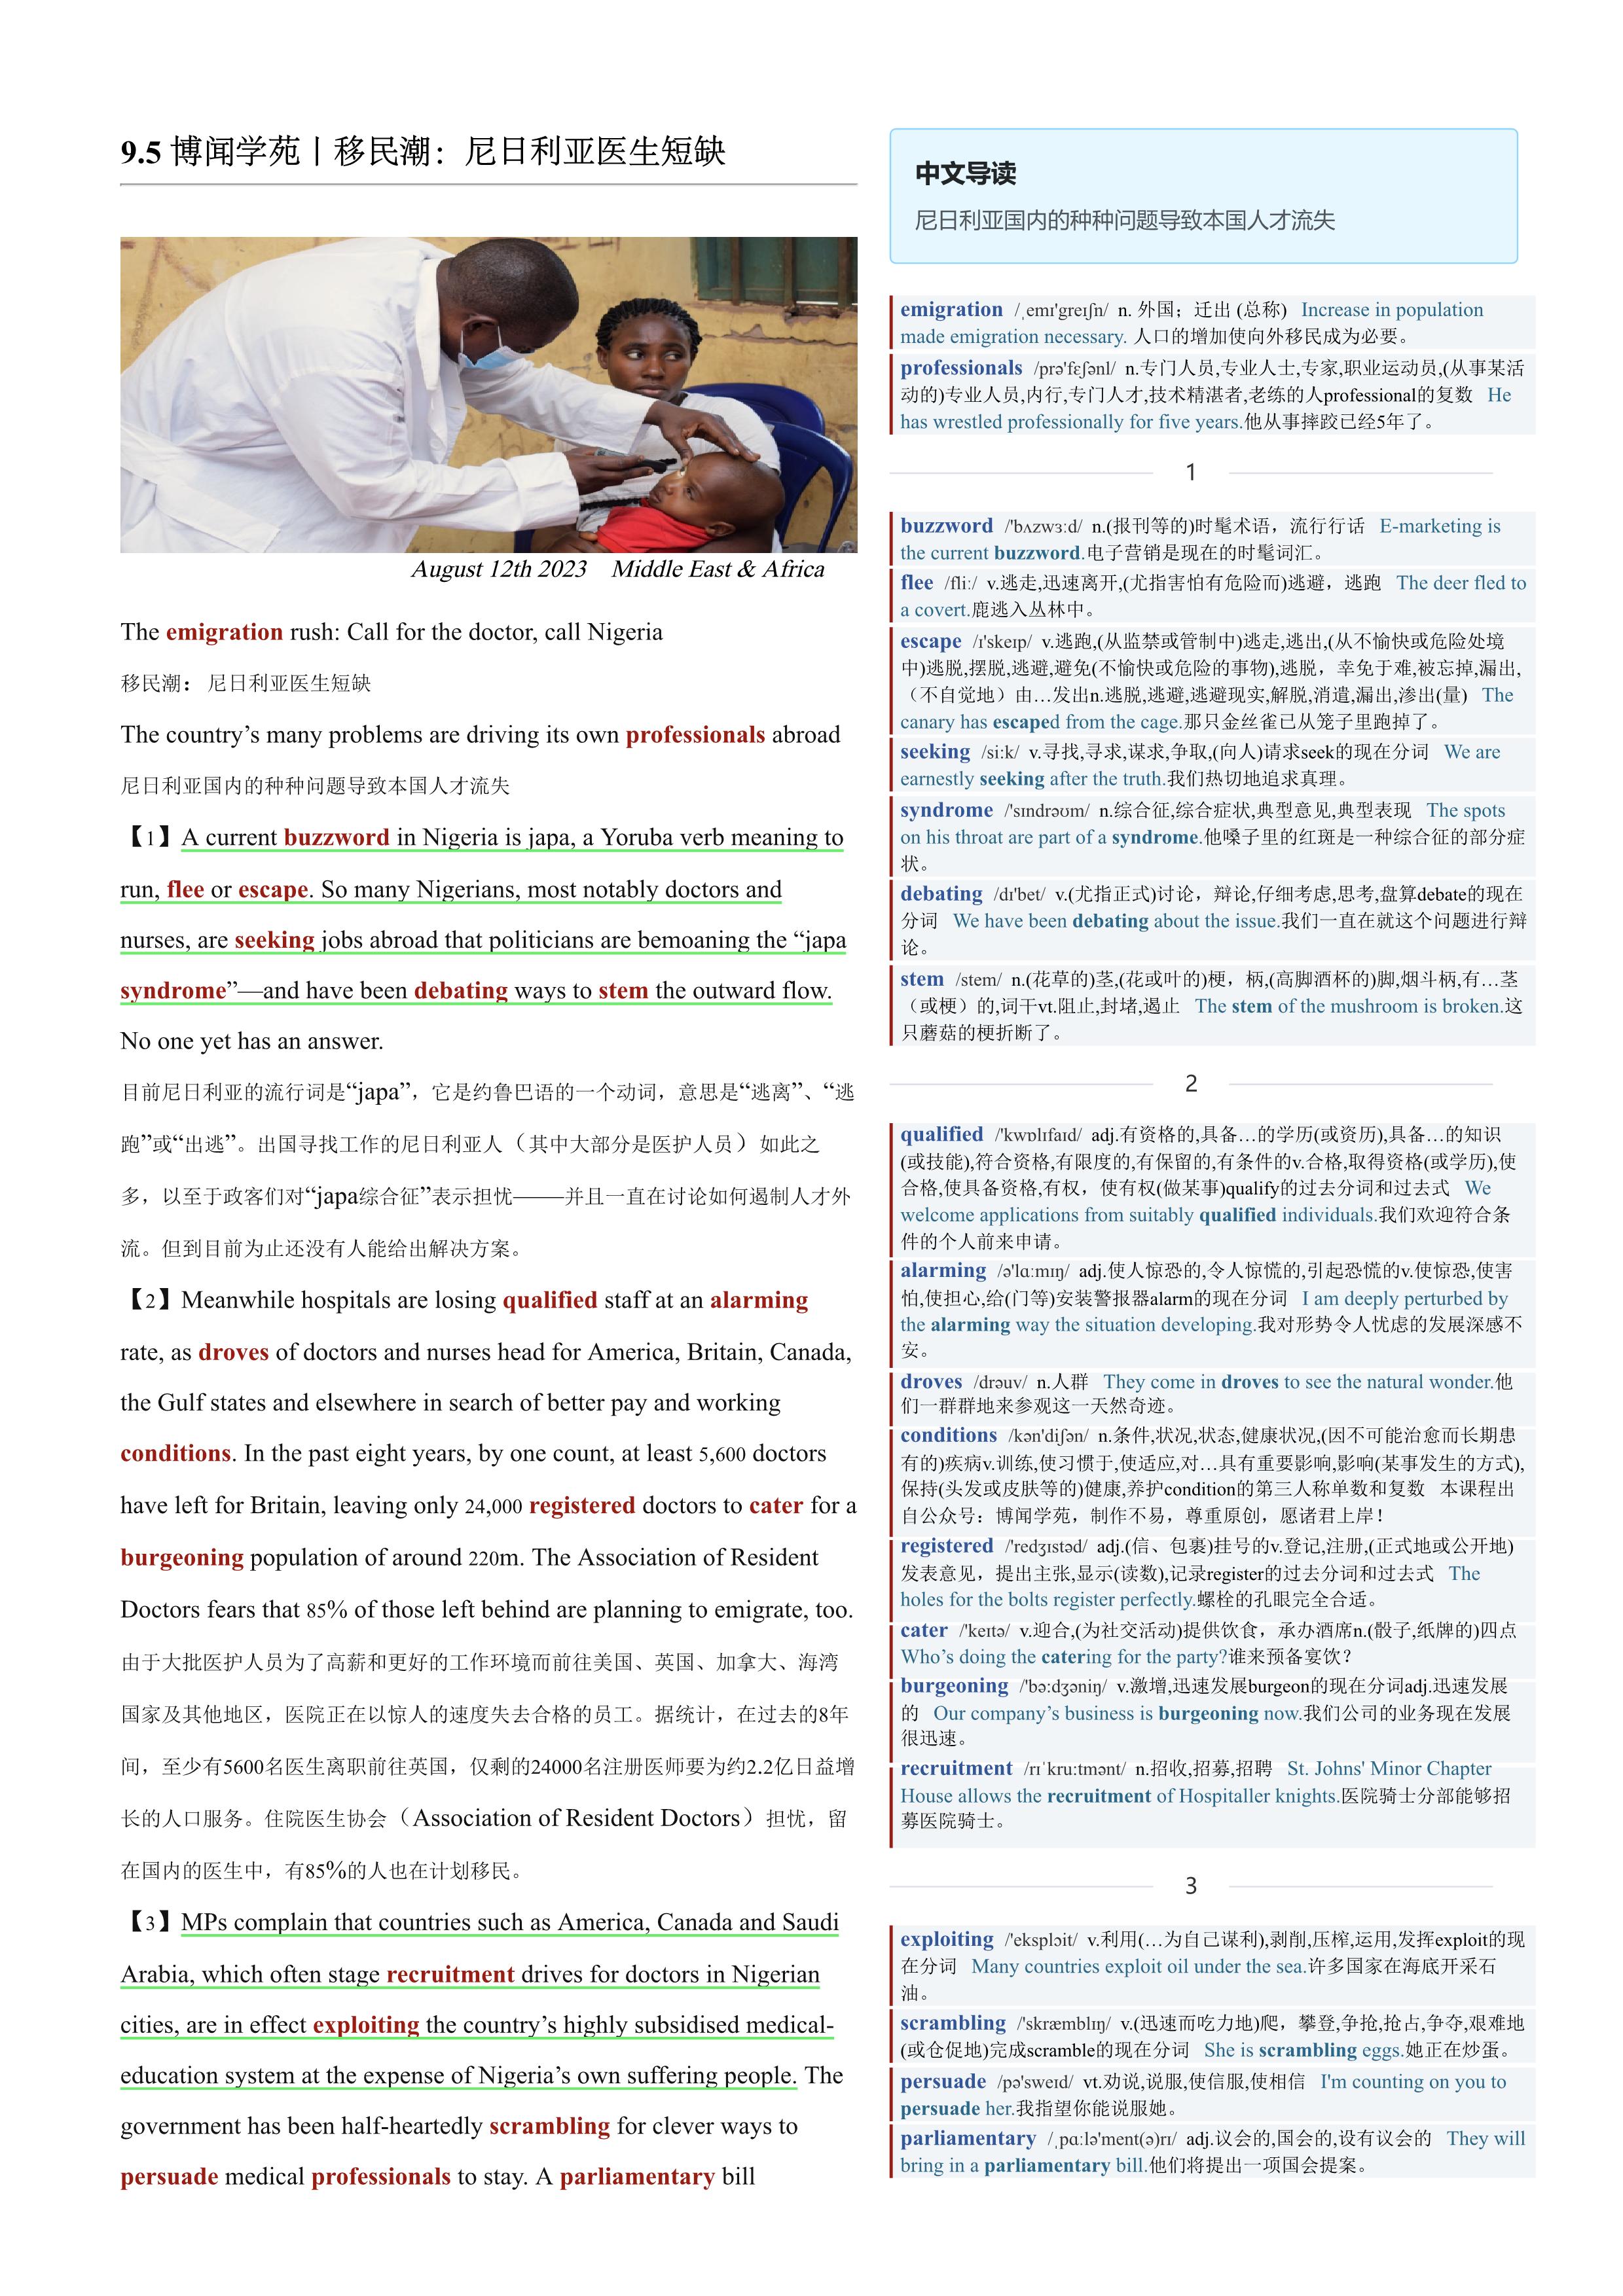 2023.09.05 经济学人双语精读丨移民潮：尼日利亚医生短缺 (.PDF/DOC/MP3)